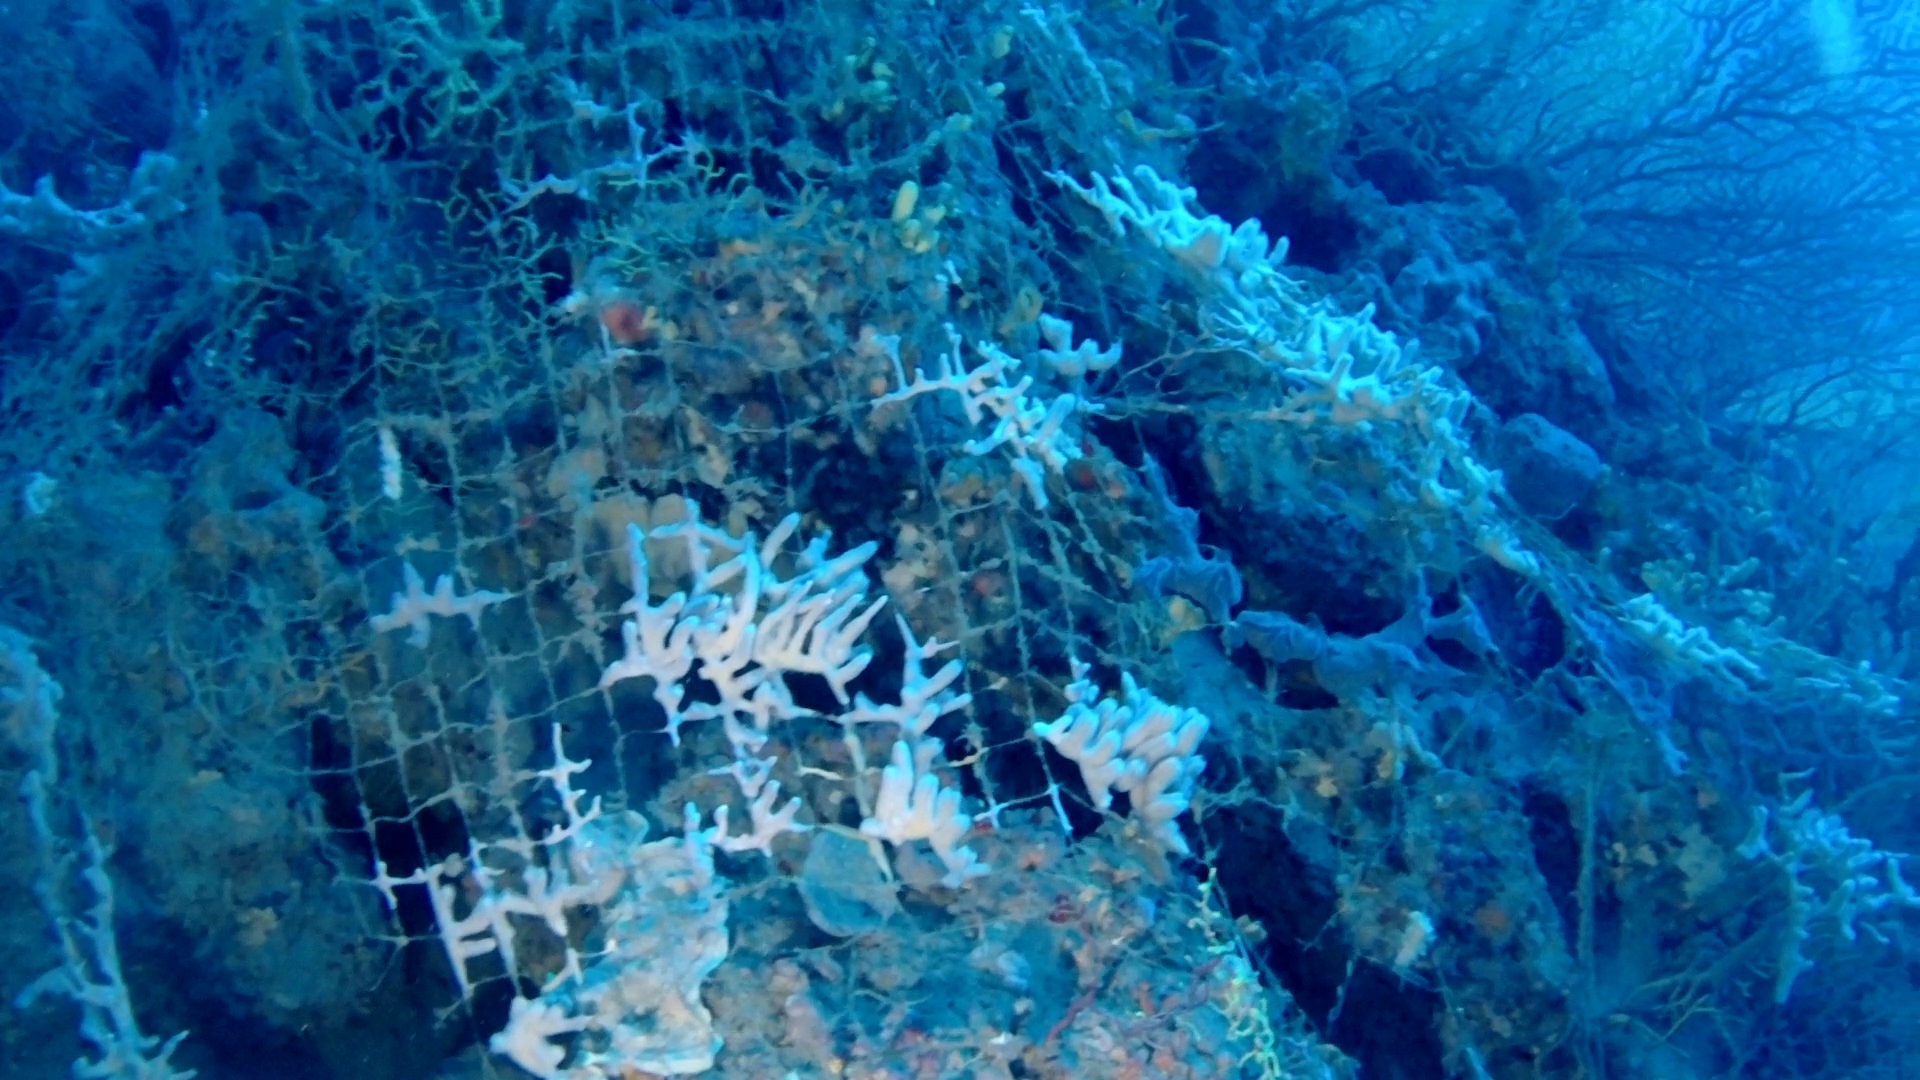 rete da pesca abbandonata colonizzata da spugne - abbandoned fishing net colonized by sponges - intotheblue.it